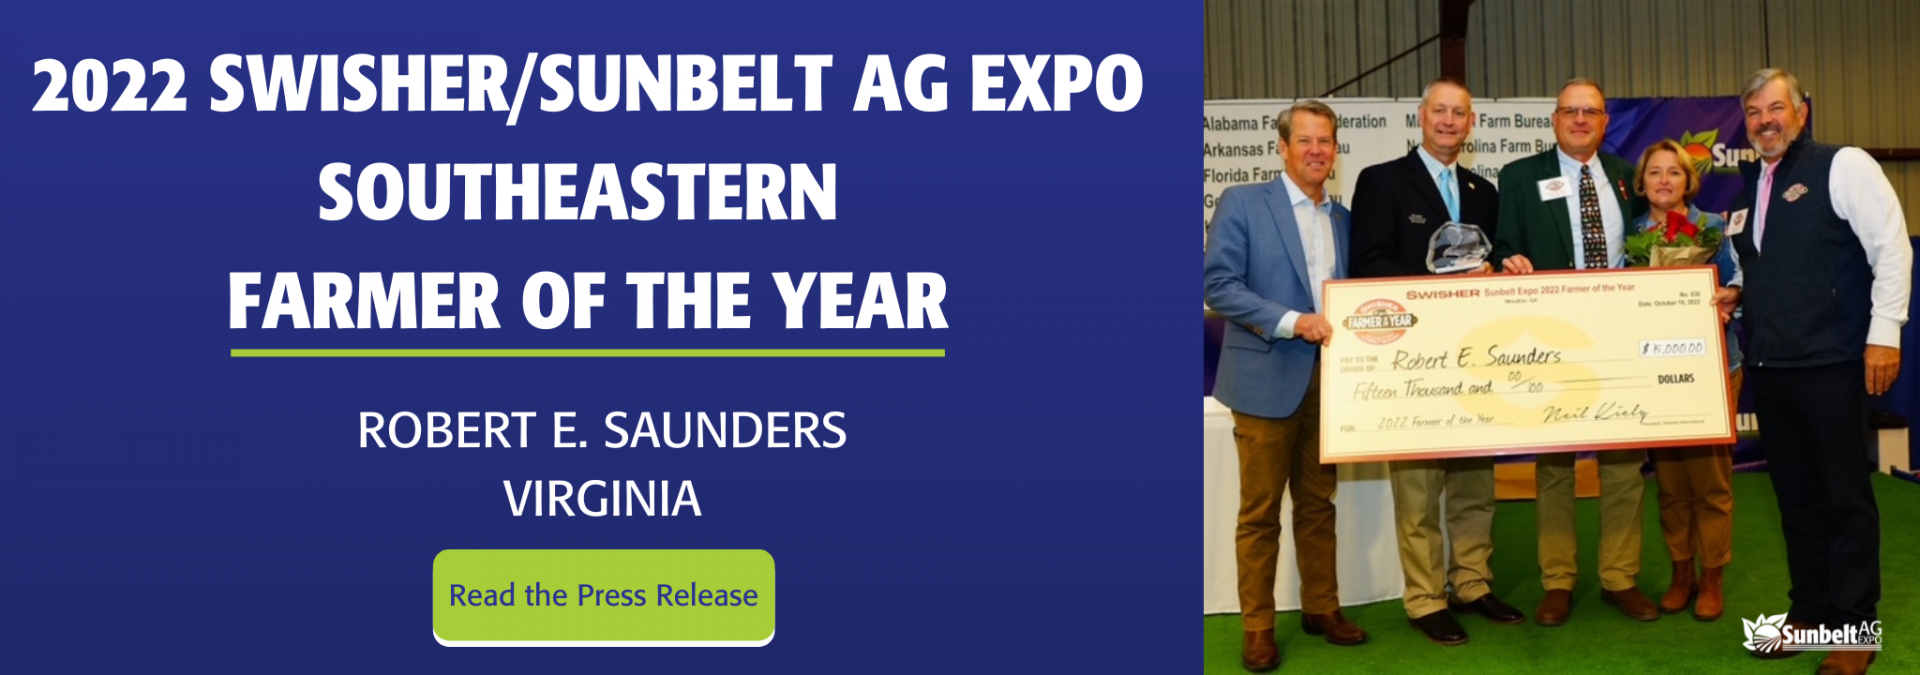 Sunbelt Ag Expo Farmer of the Year 2022